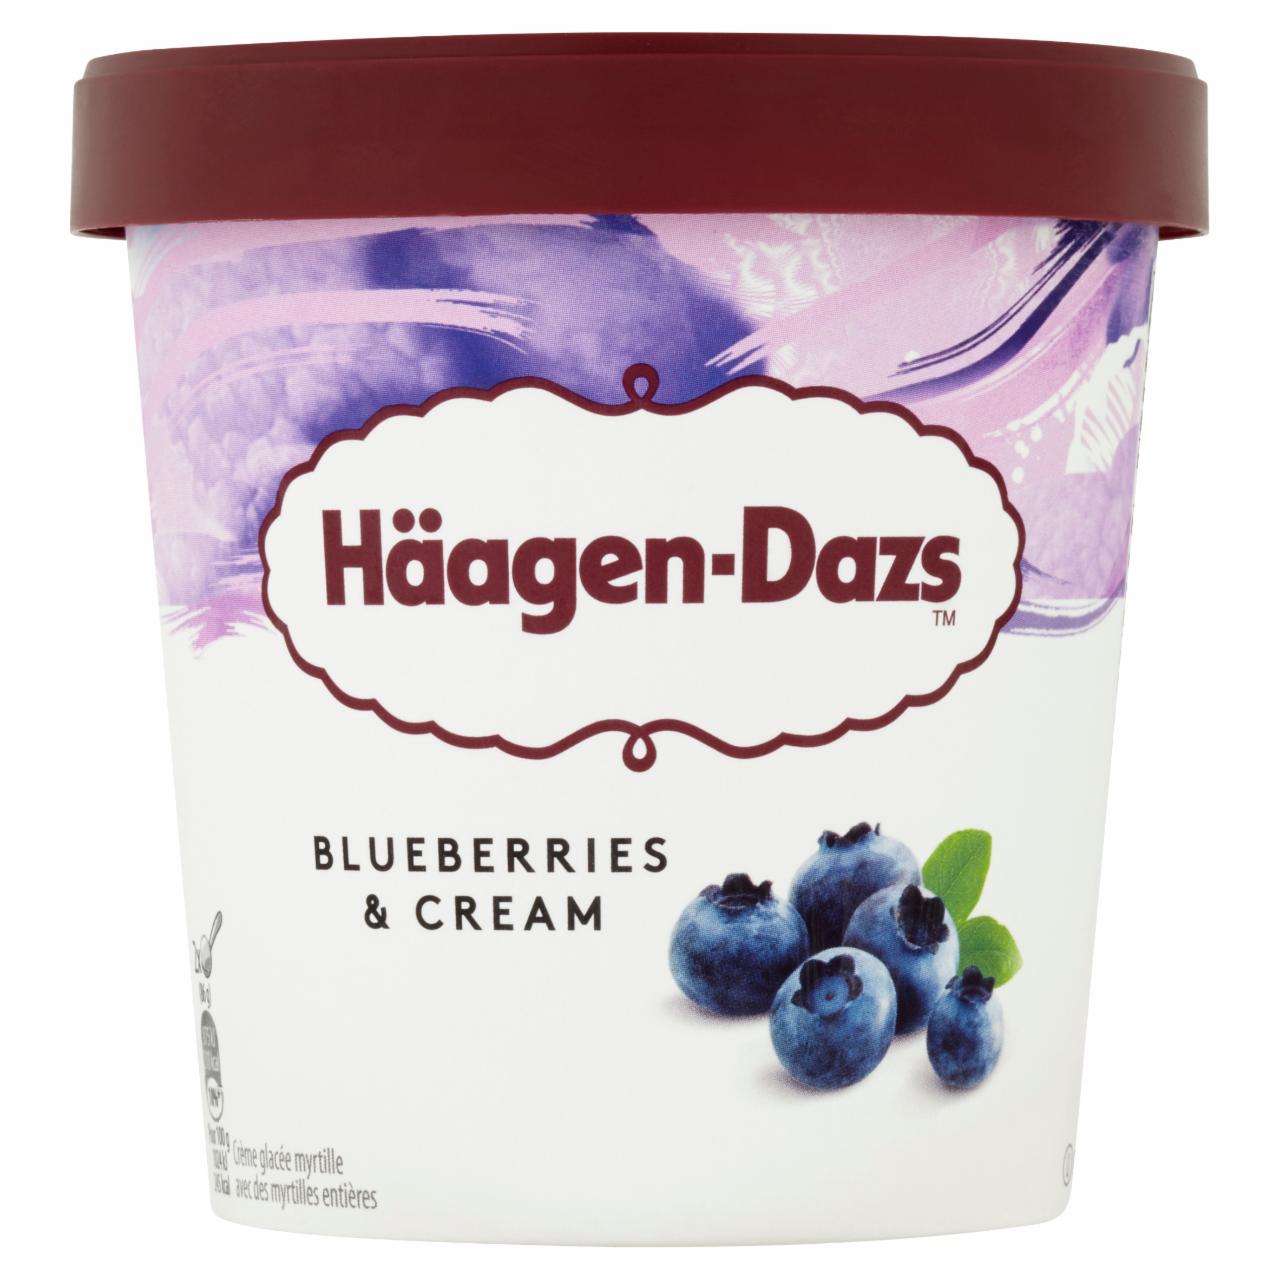 Képek - Häagen-Dazs Blueberries & Cream gluténmentes tejes-áfonyás gyümölcsjégkrém 460 ml